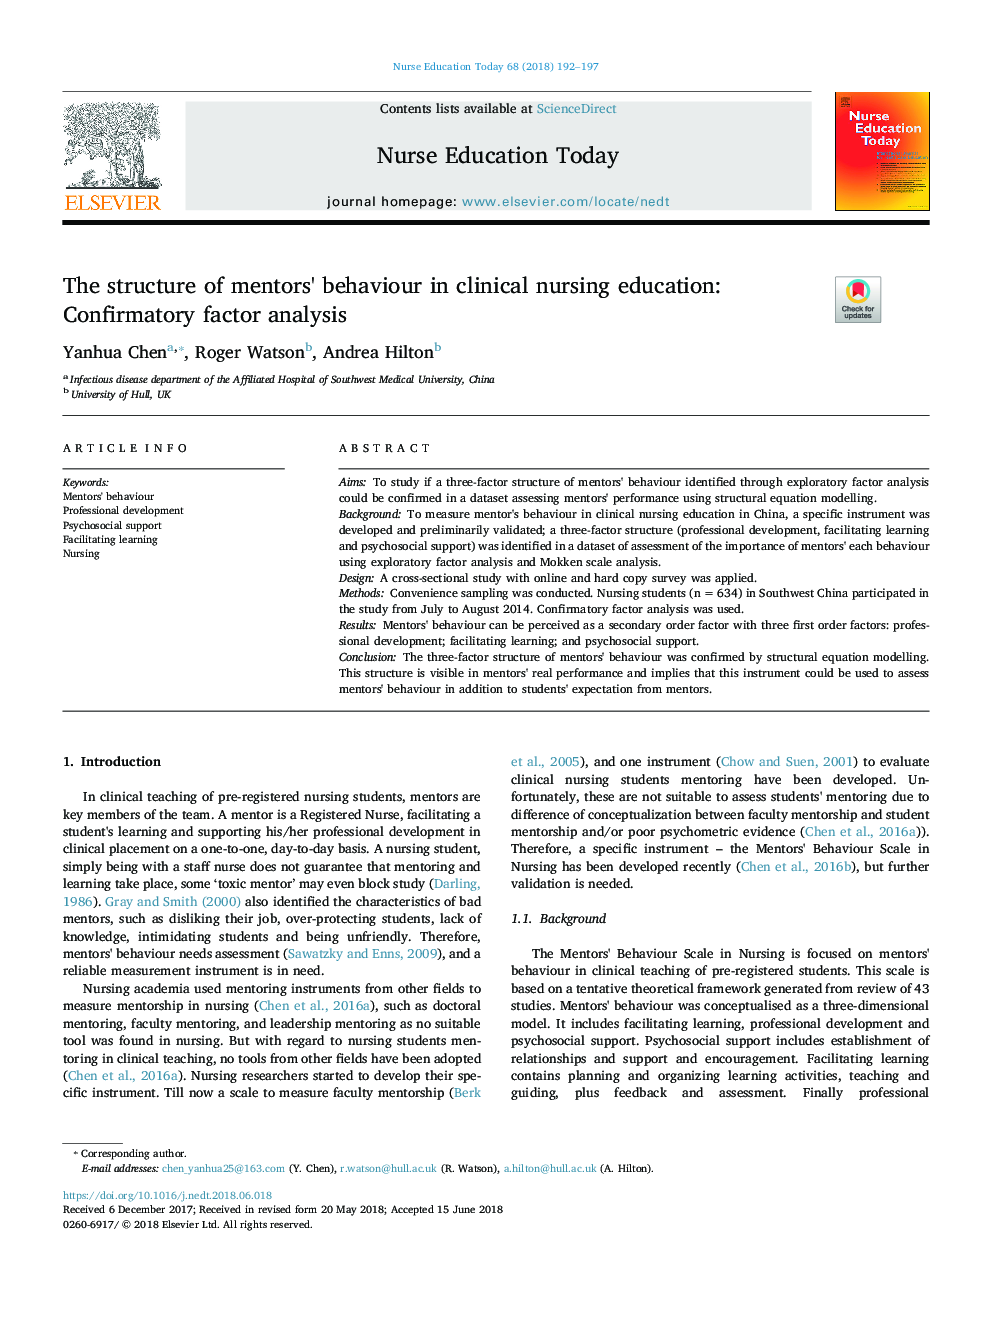 ساختار رفتار مربیان در آموزش پرستاری بالینی: تجزیه و تحلیل عامل تأیید 